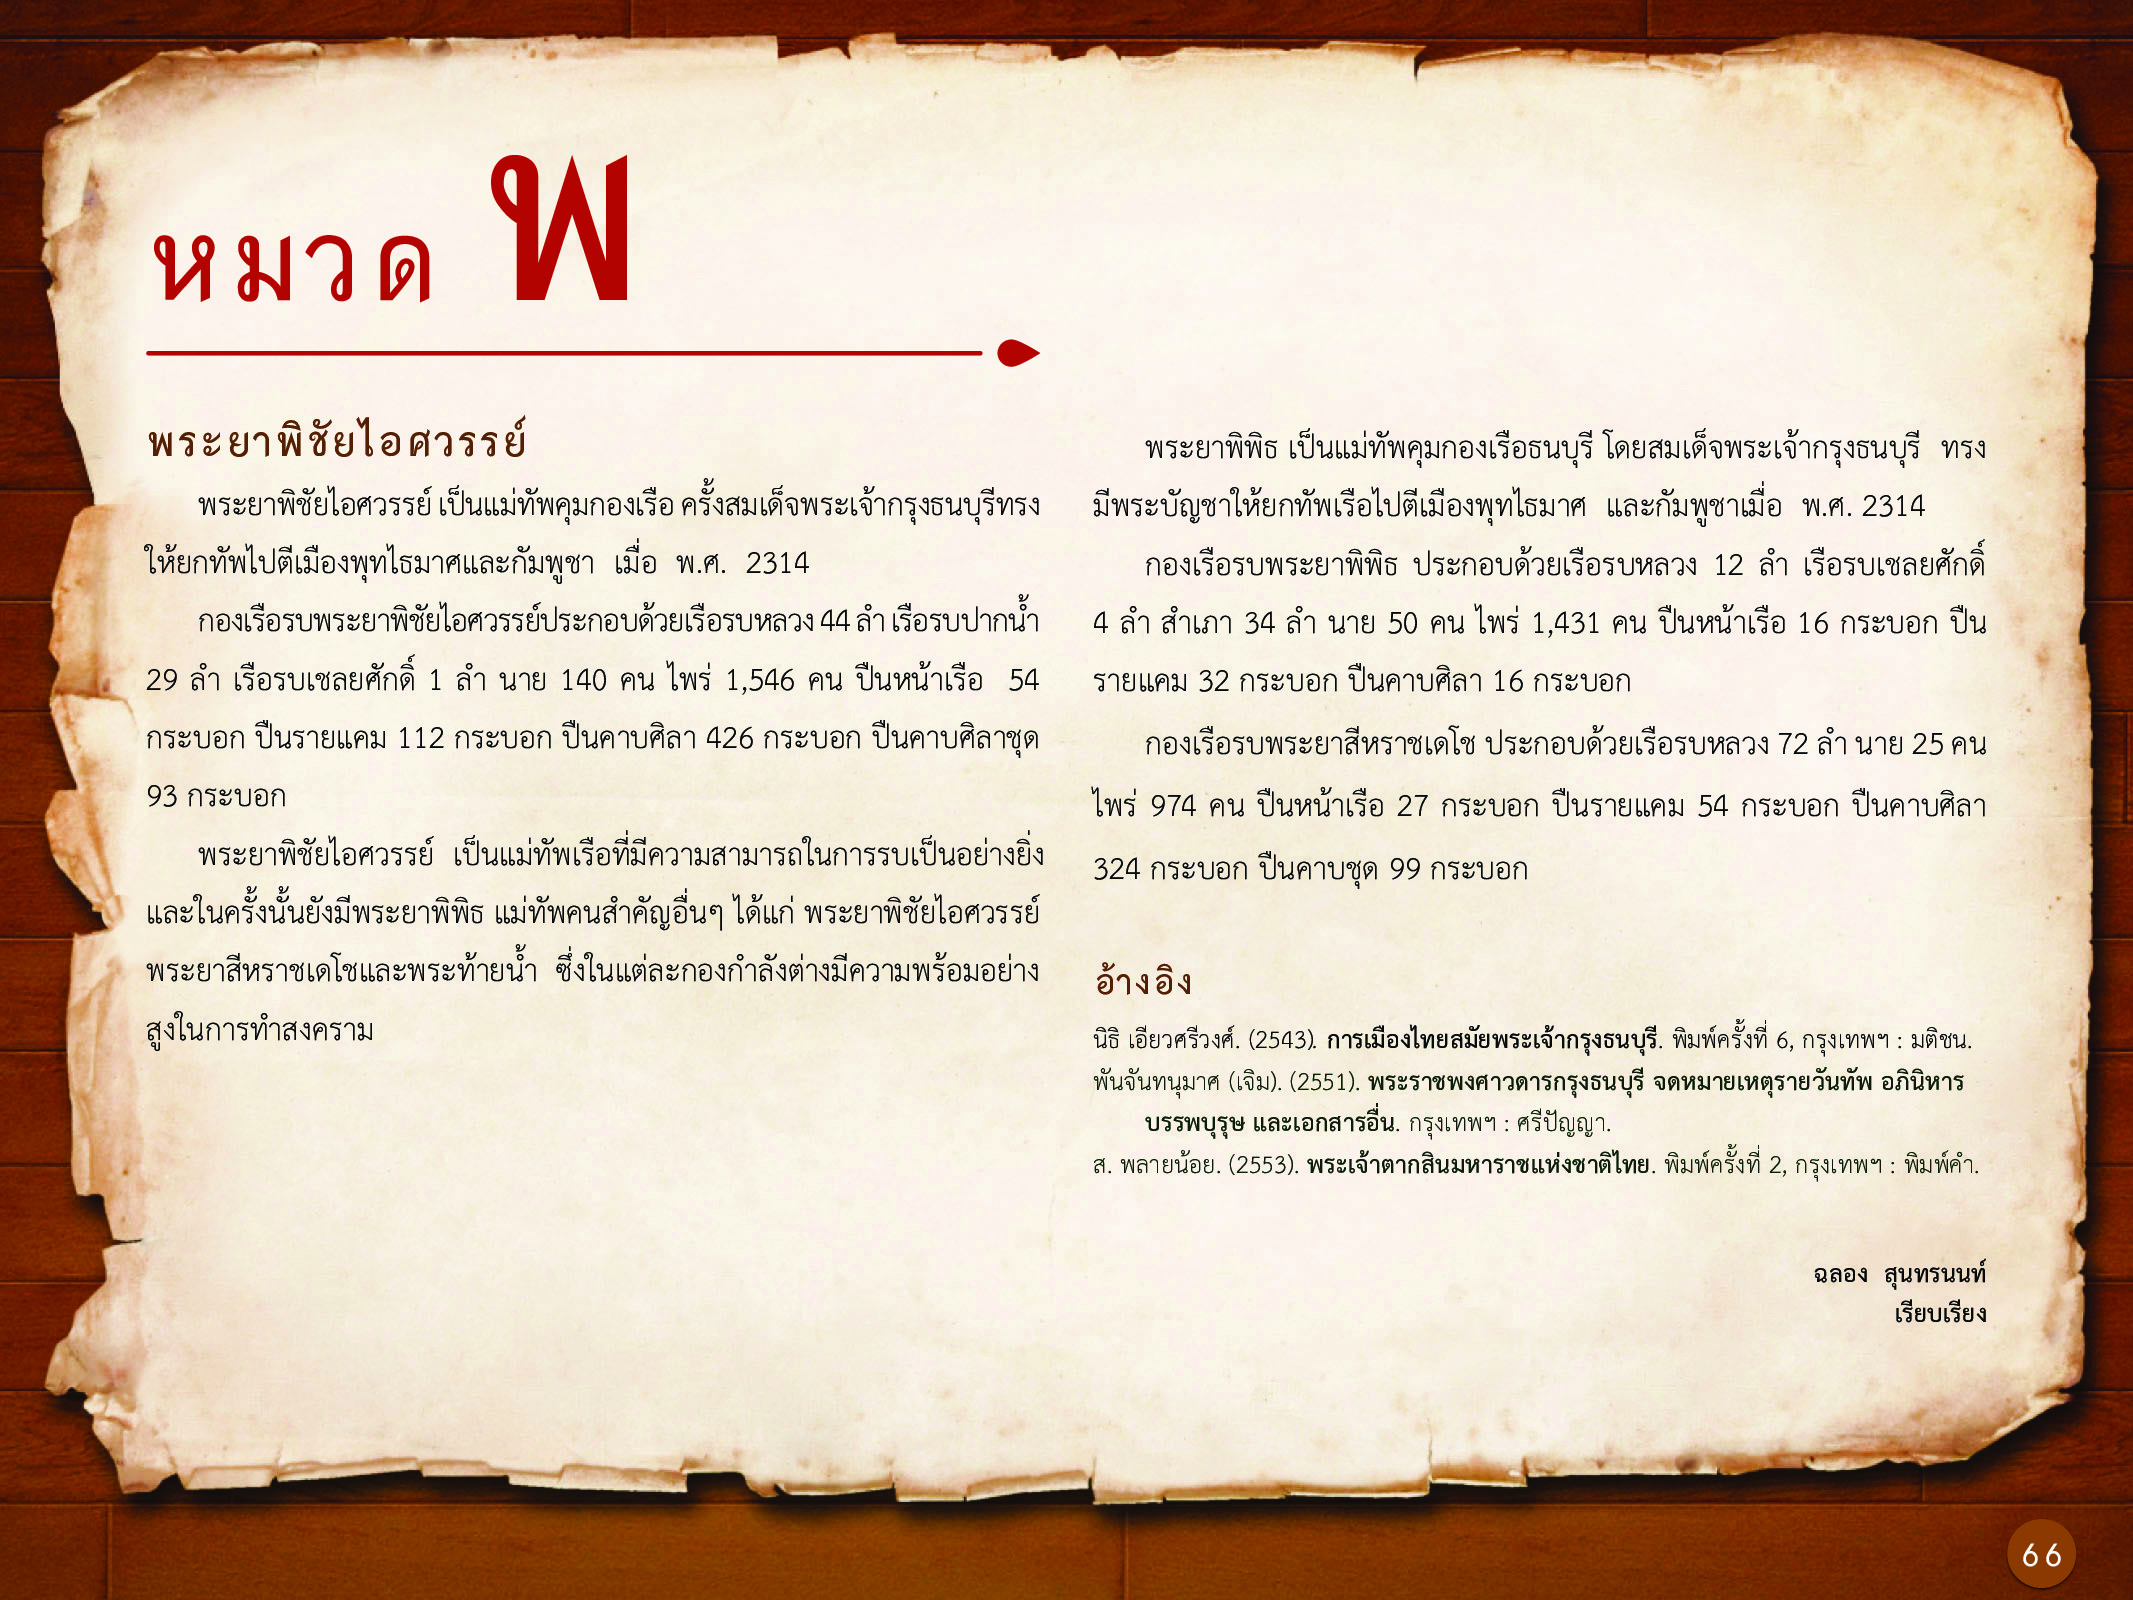 ประวัติศาสตร์กรุงธนบุรี ./images/history_dhonburi/66.jpg